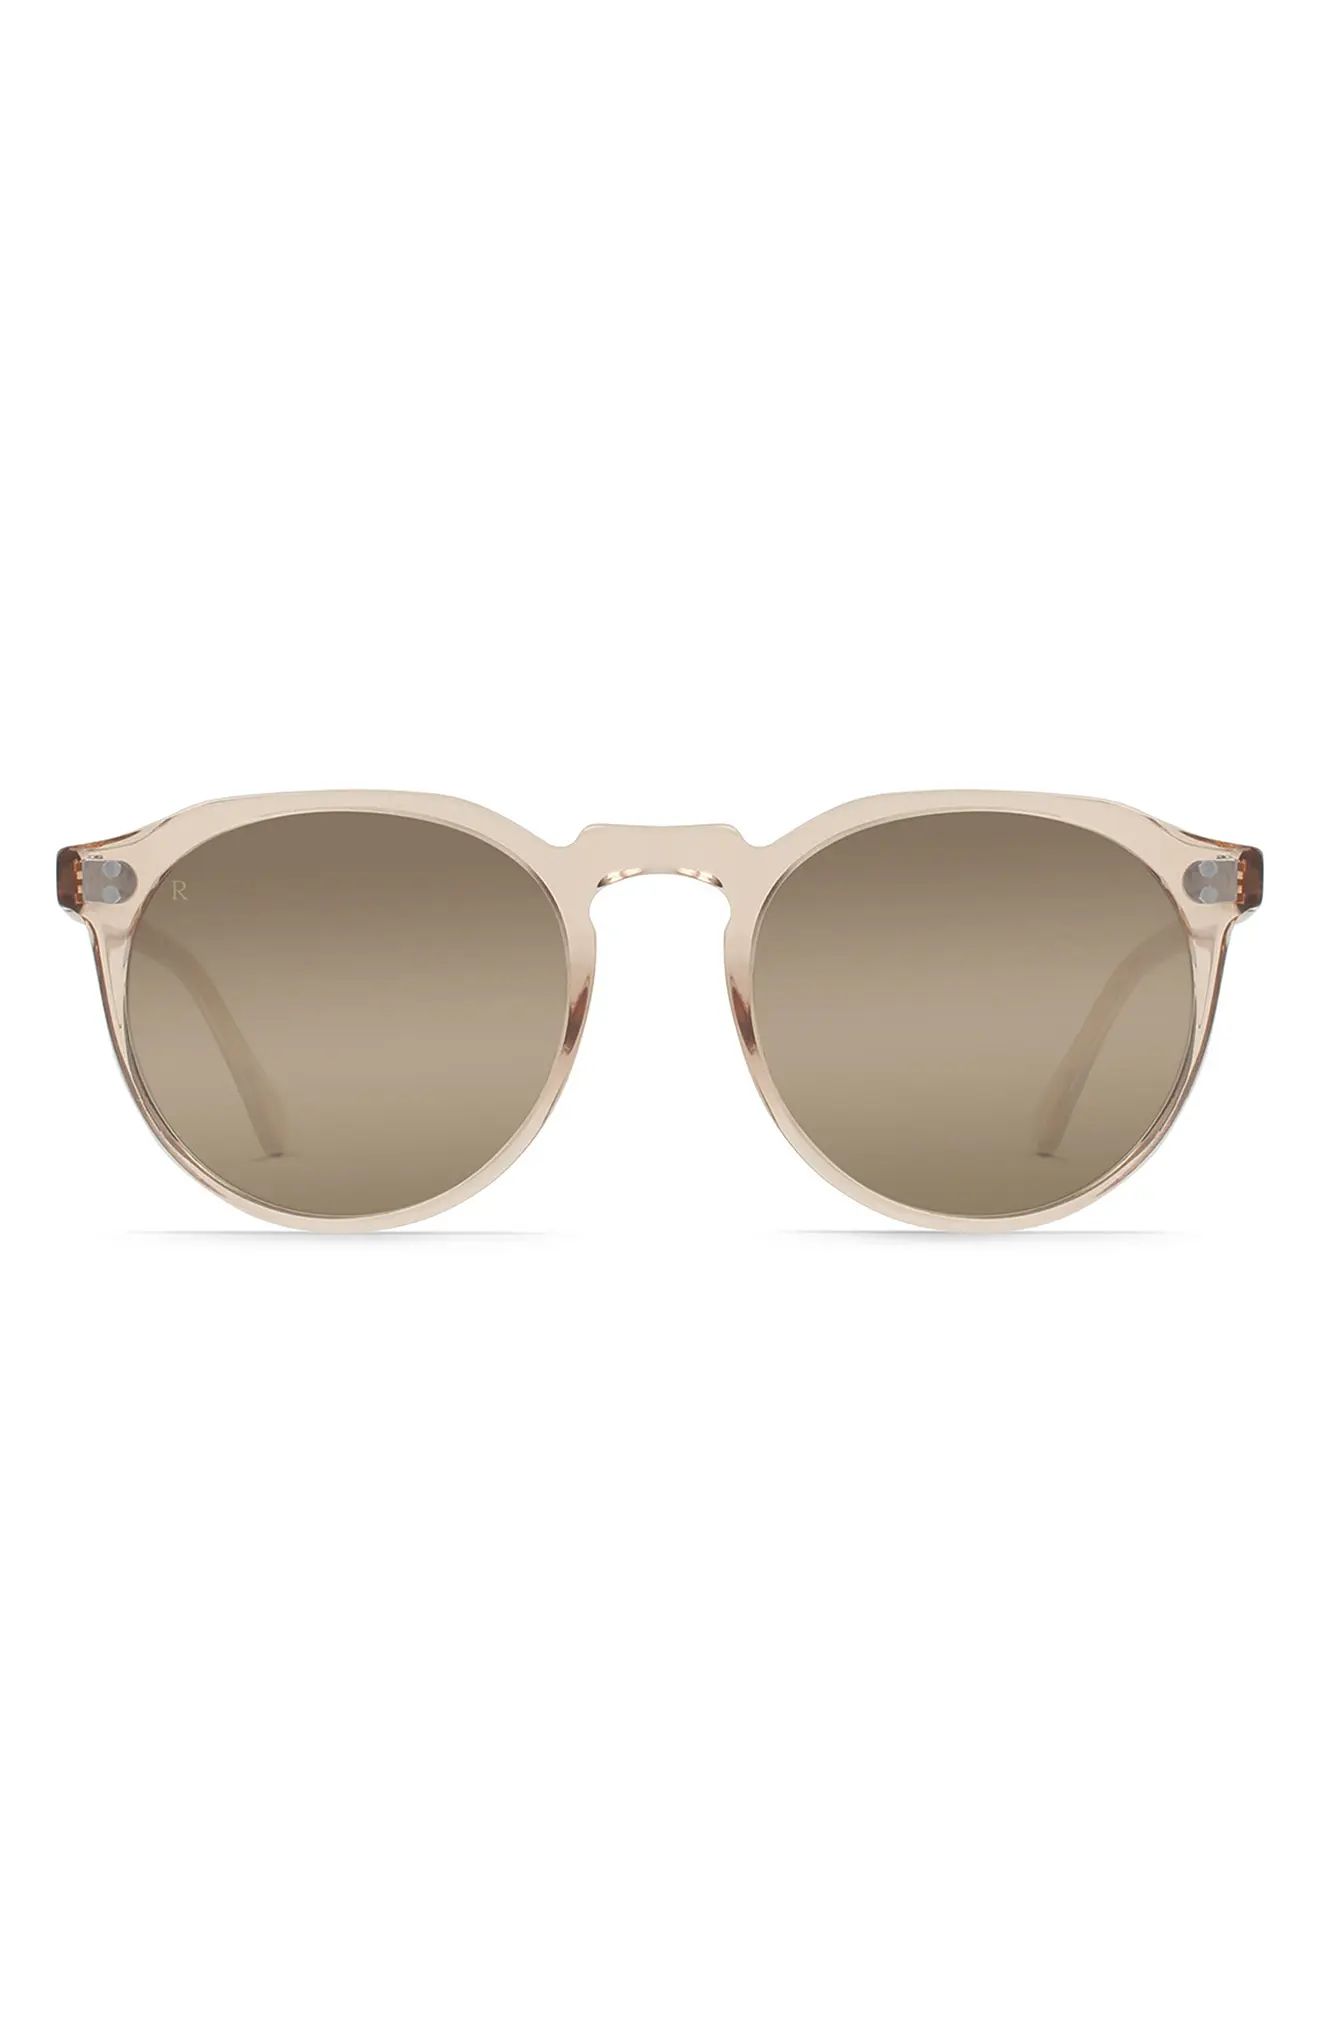 Women's Raen Remmy 49mm Polarized Mirrored Round Sunglasses - Dawn/ Mink Gradient Mirror | Nordstrom